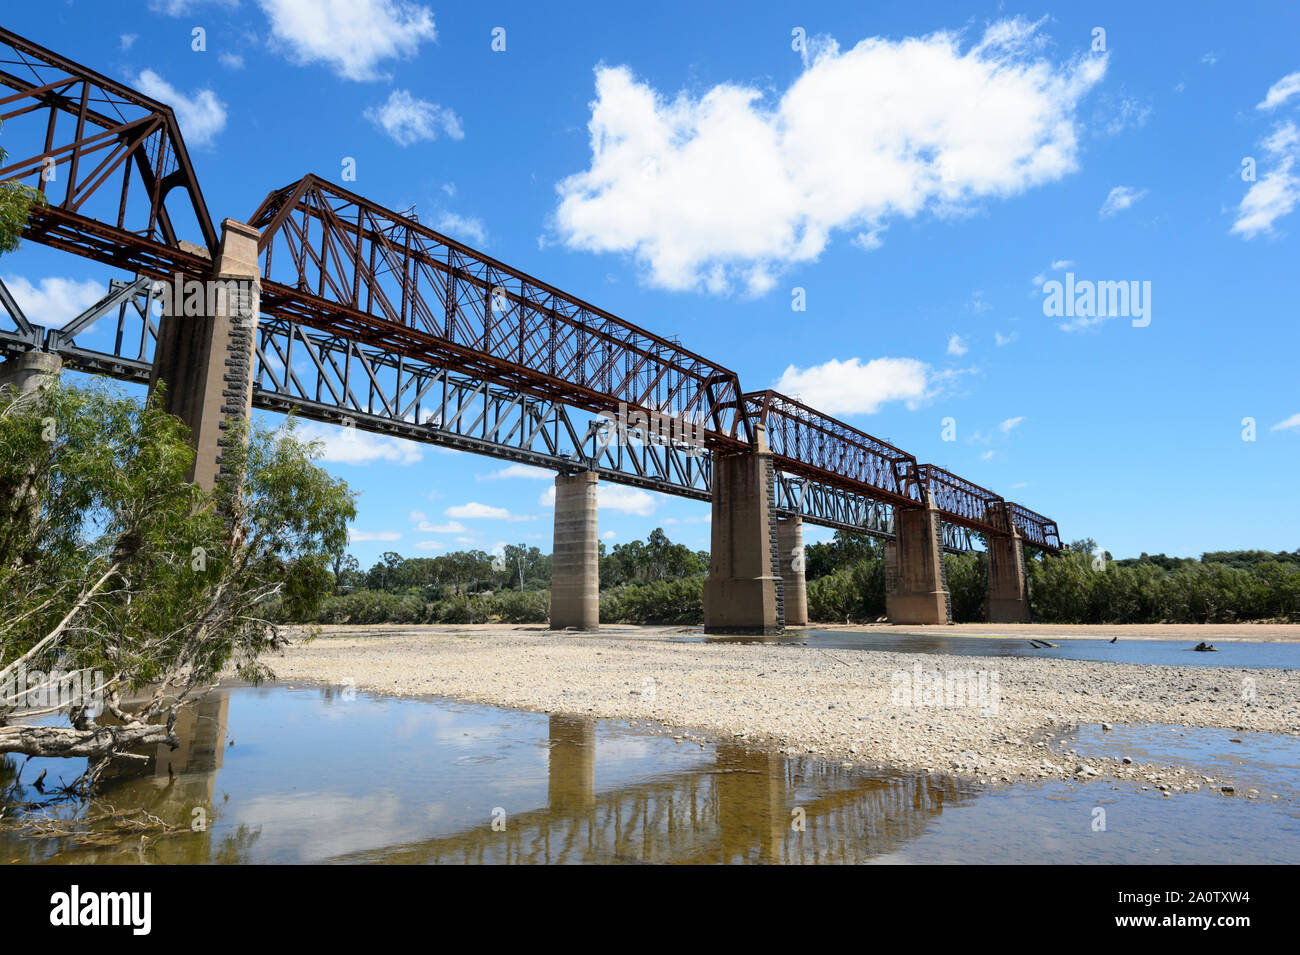 Burdekin pont ferroviaire est classé au Patrimoine Mondial de l'ancien pont ferroviaire sur le Great Northern Railway au cours de la Burdekin à Macrossan, près de la location Banque D'Images